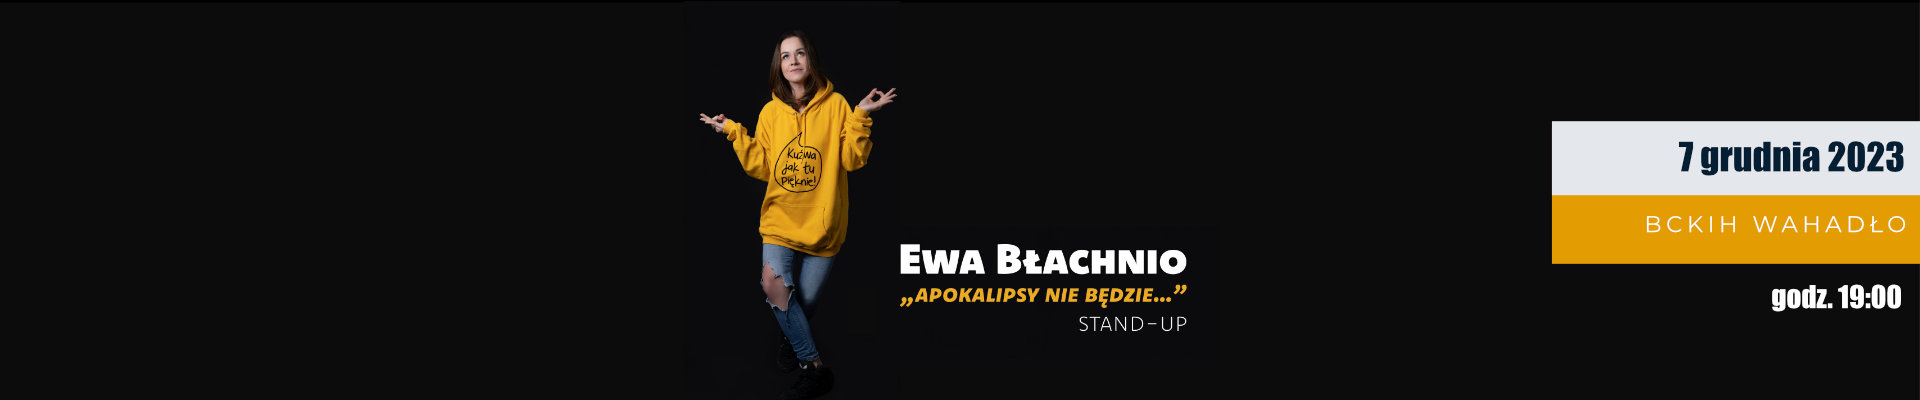 Stand-Up Ewa Błachnio